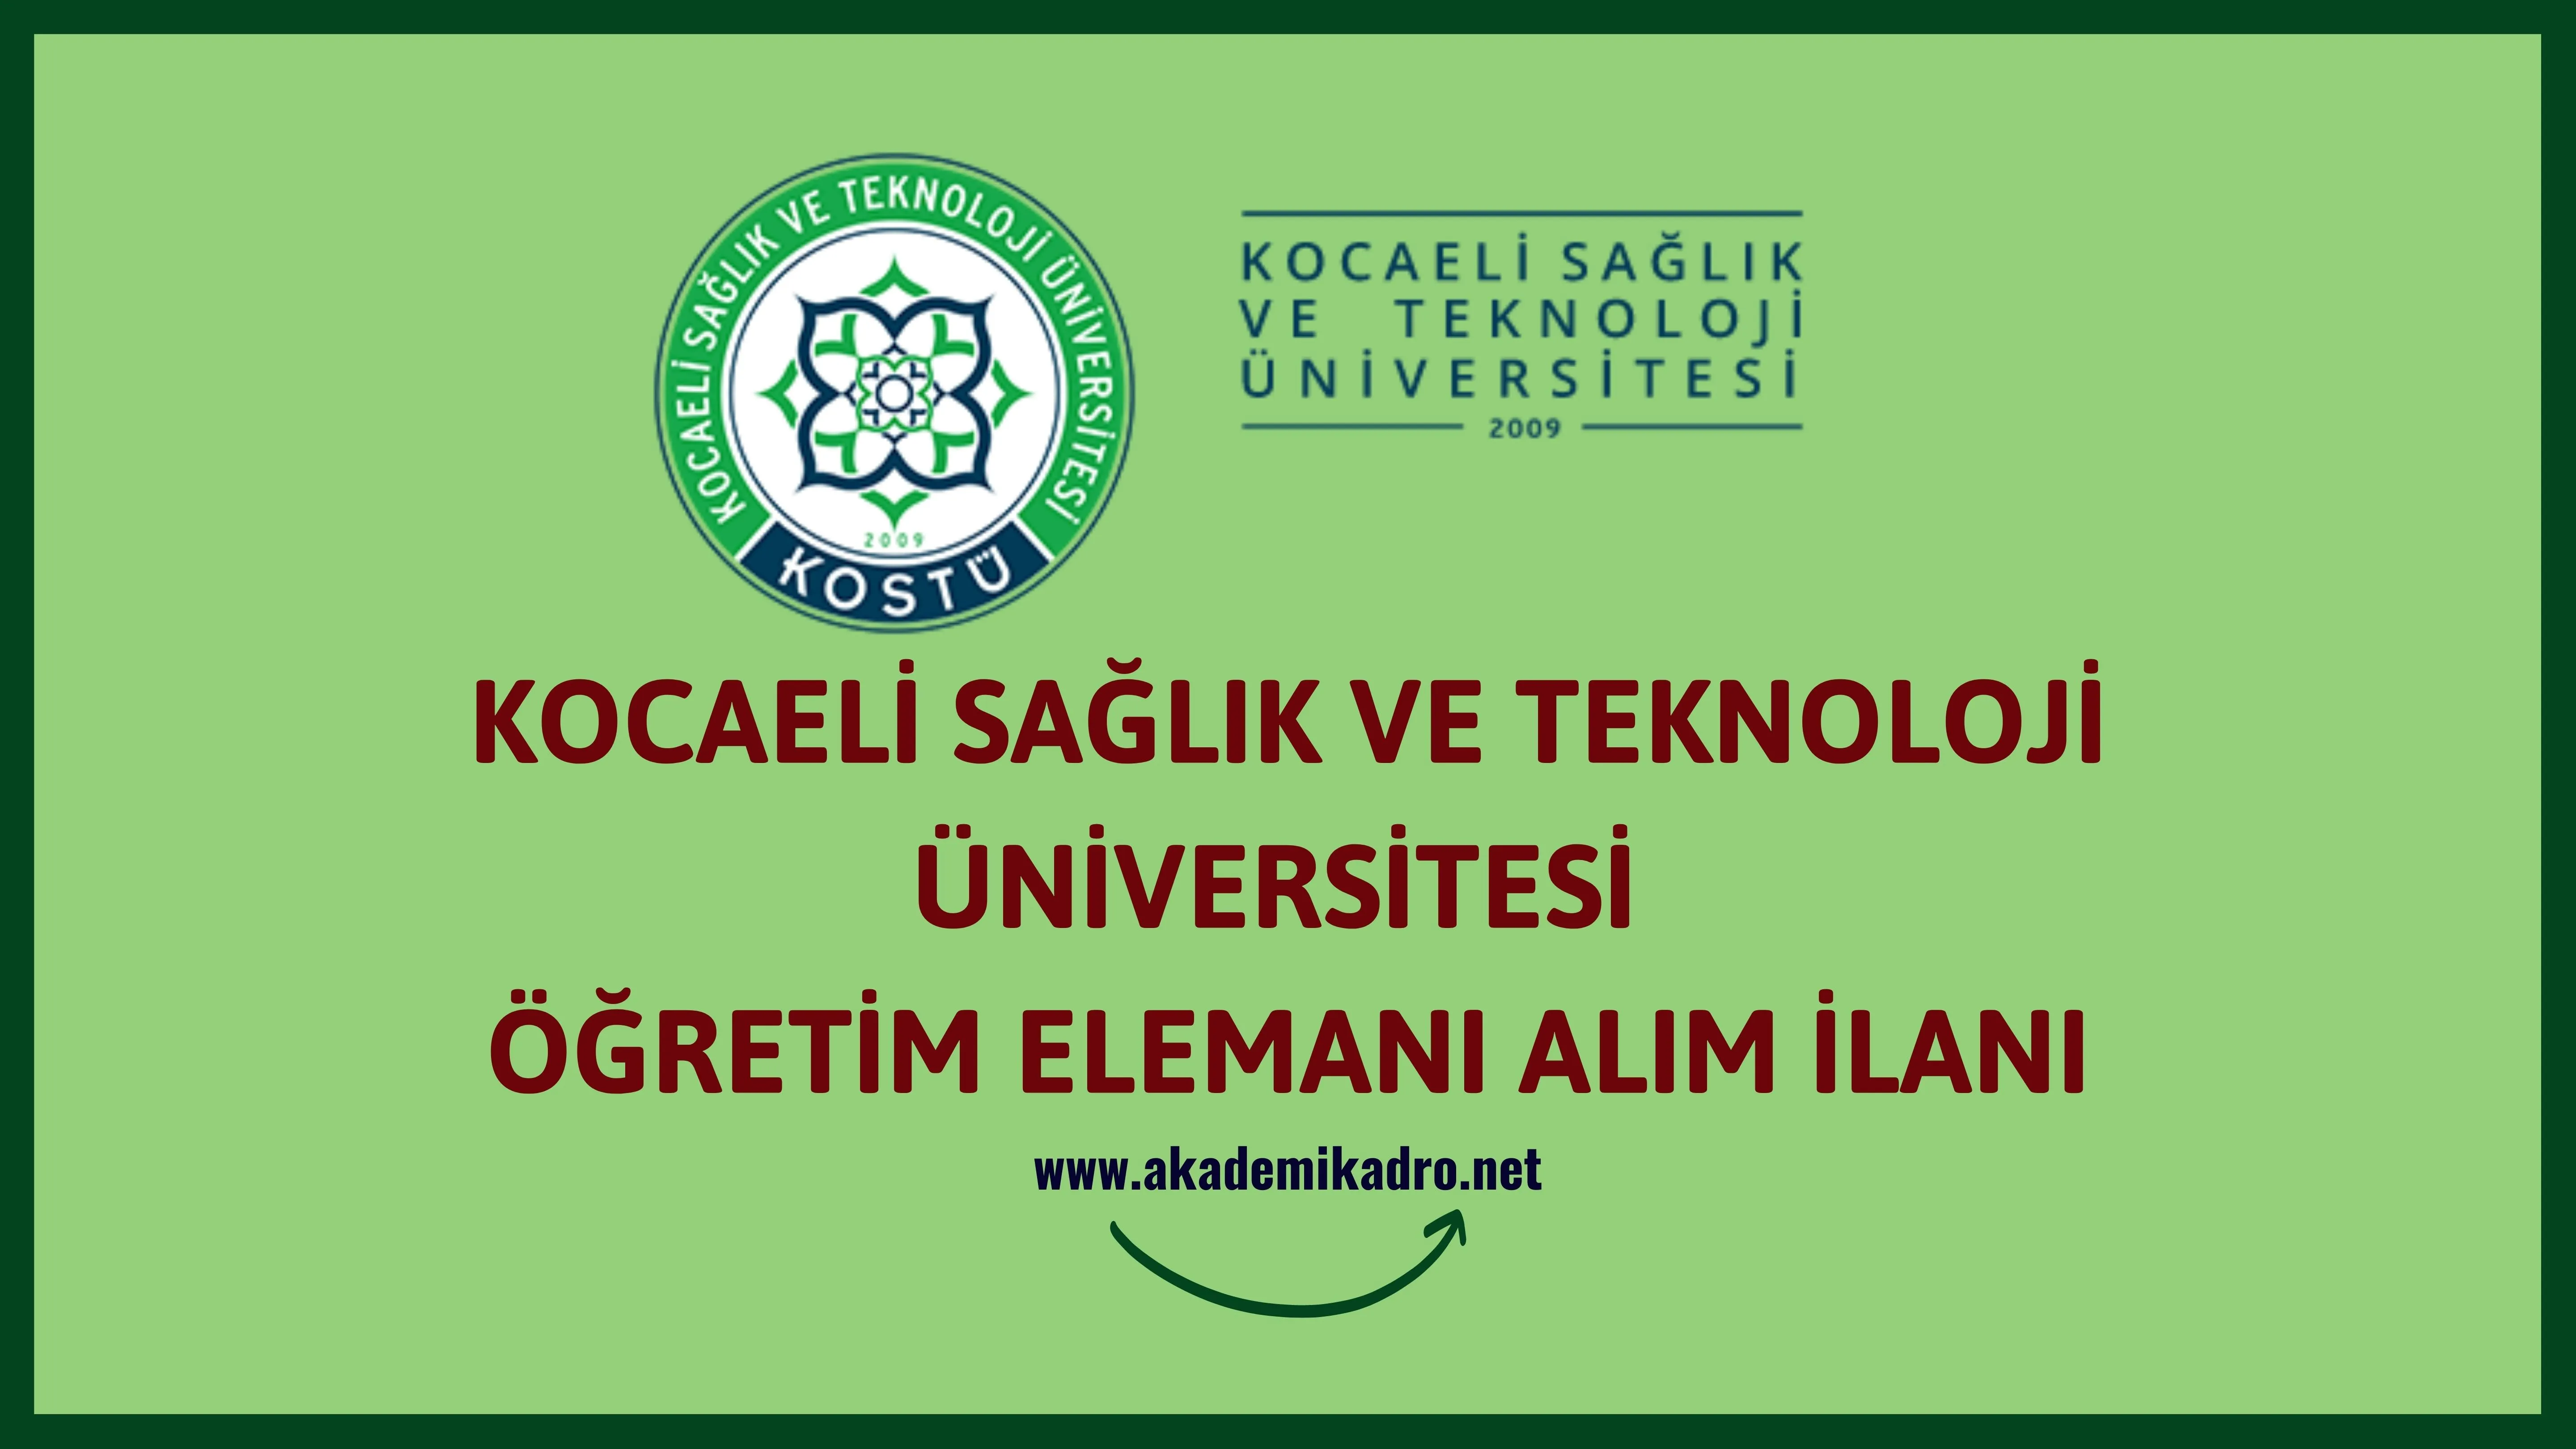 Kocaeli Sağlık ve Teknoloji Üniversitesi 5 Öğretim üyesi ve 4 Öğretim Görevlisi alacaktır. Son başvuru tarihi 04 Ekim 2022